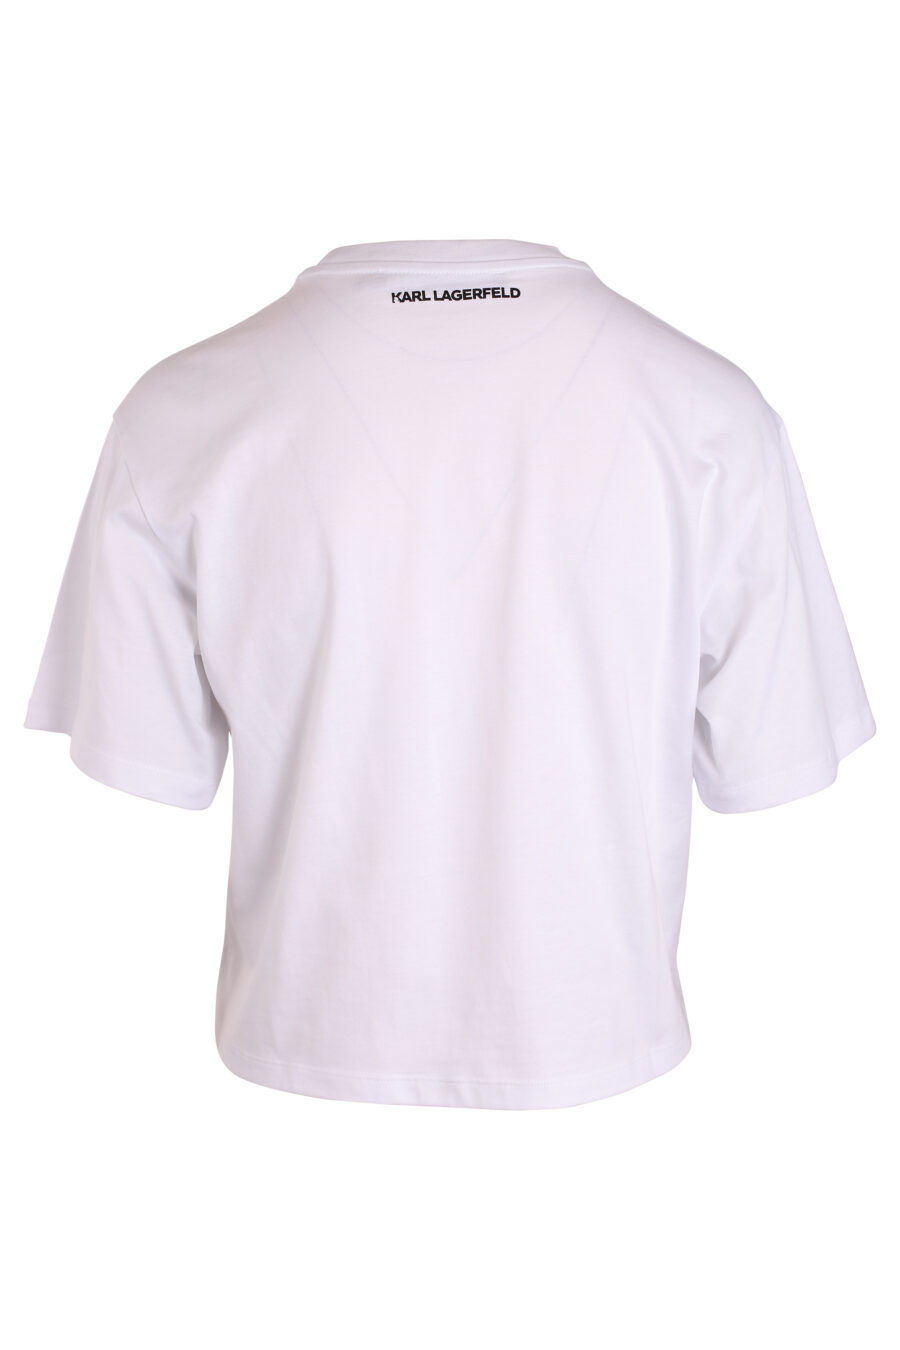 Camiseta blanca con franja central bicolor - IMG 3412